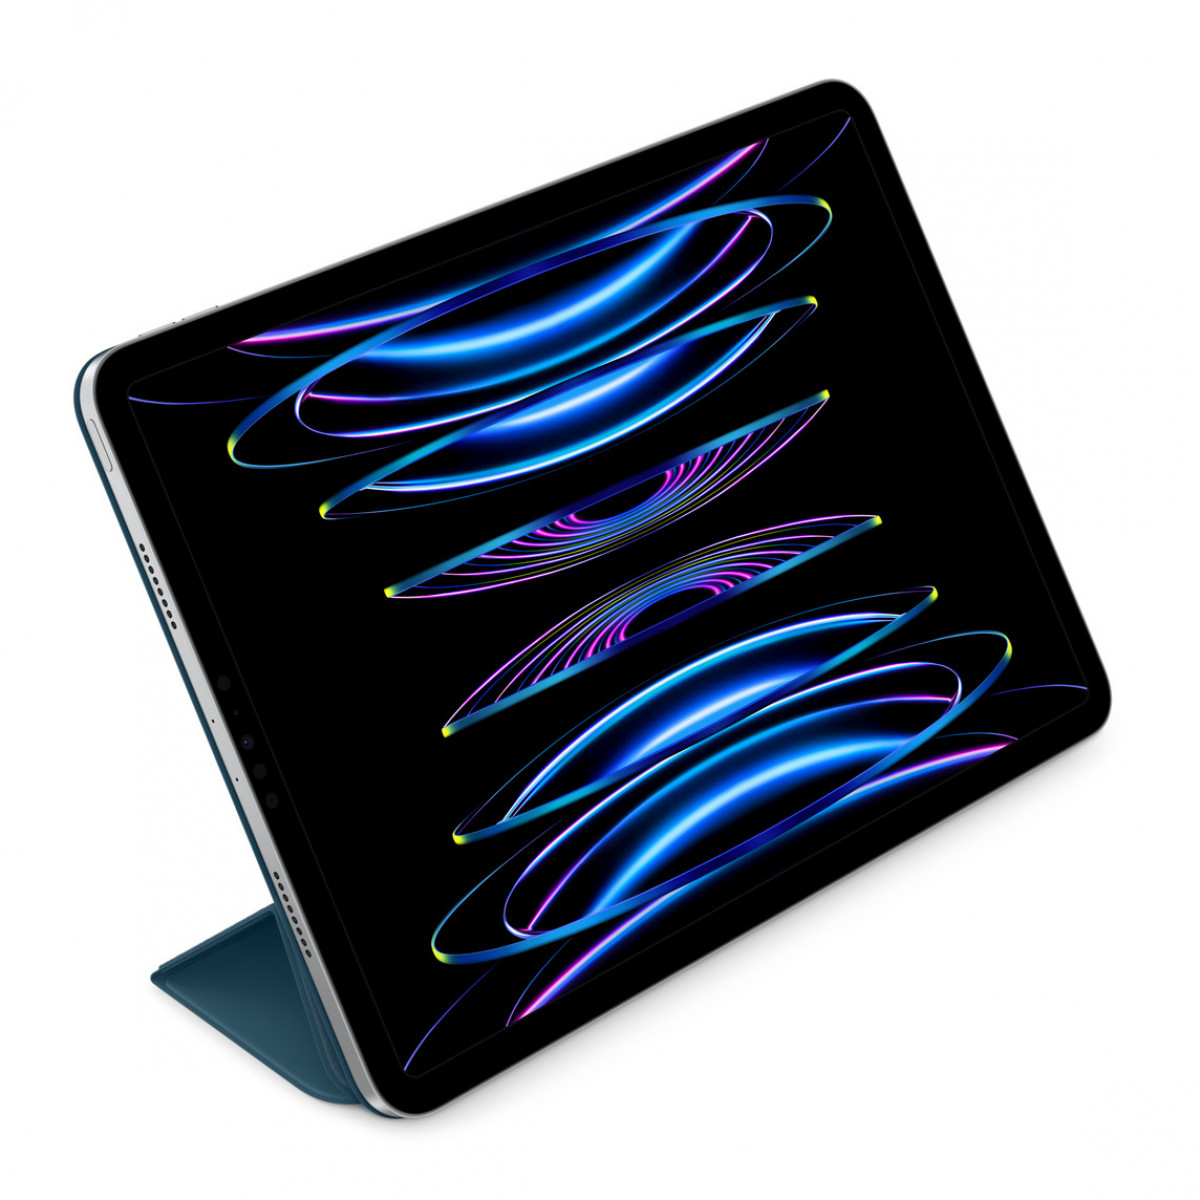 Smart Folio для iPad Pro 12.9" (6-поколения) - Морской синий